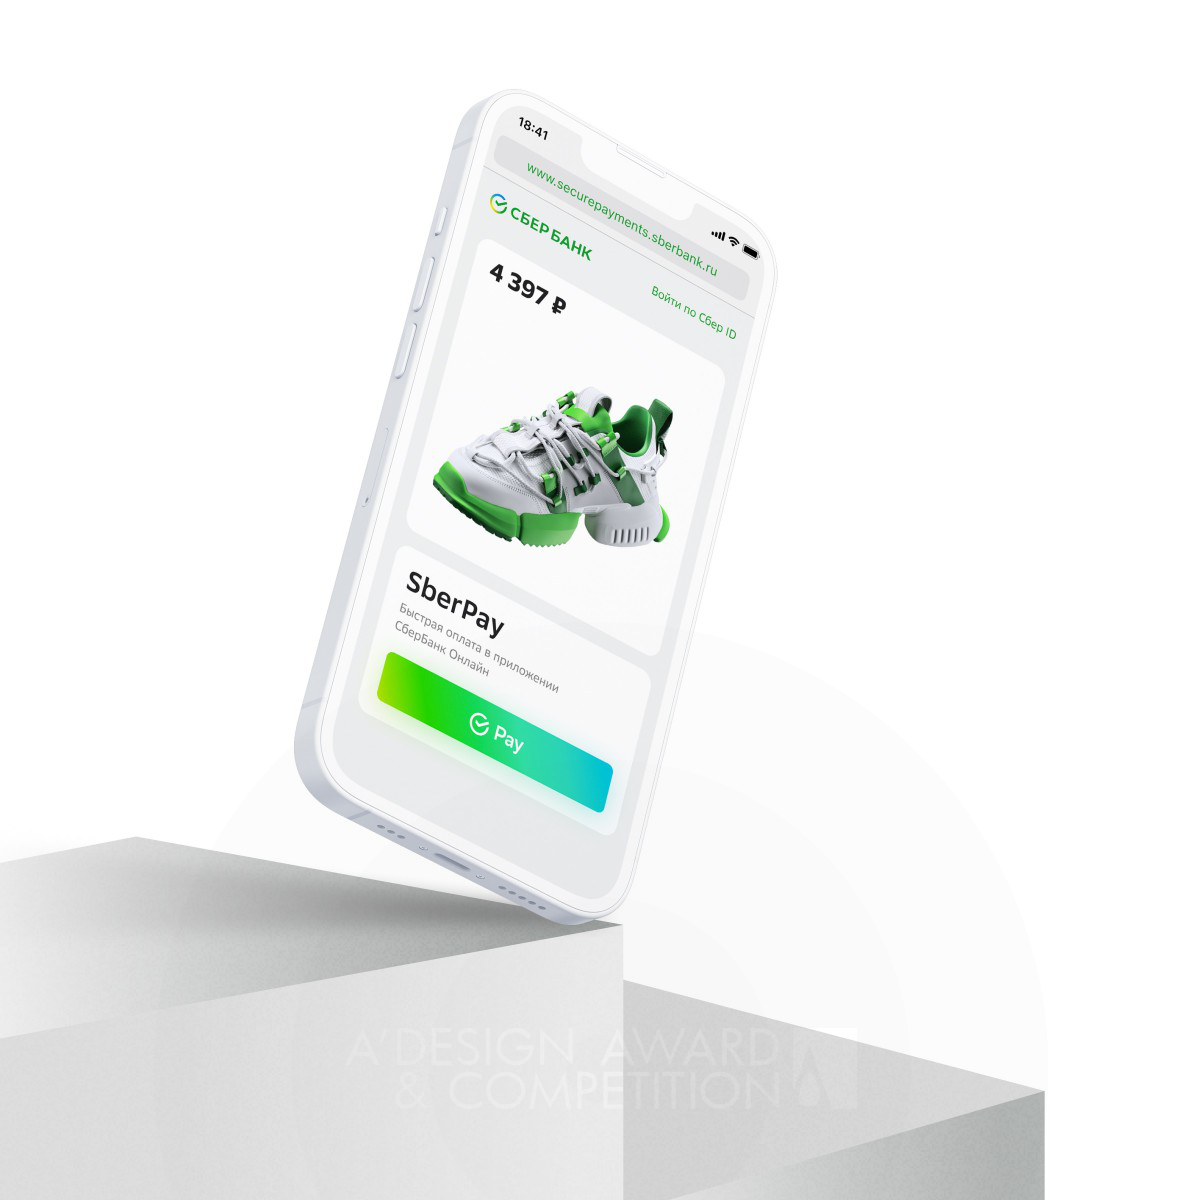 SberPay: Eine innovative Zahlungsmethode für bequemes und sicheres Einkaufen